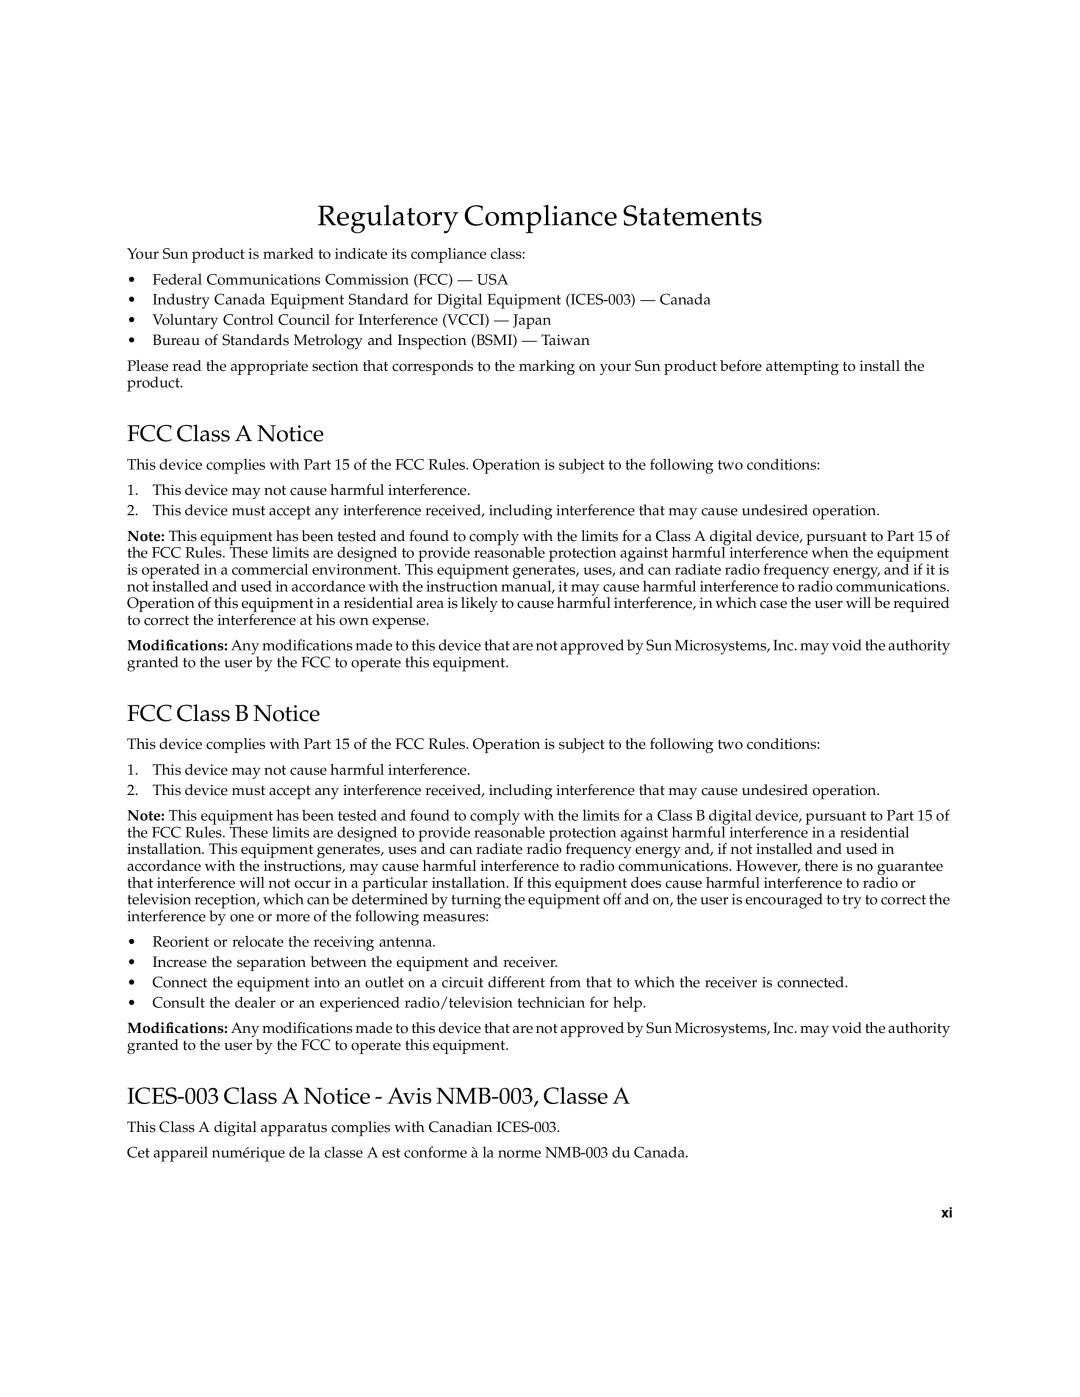 Sun Microsystems PCI manual Regulatory Compliance Statements, FCC Class A Notice, FCC Class B Notice 